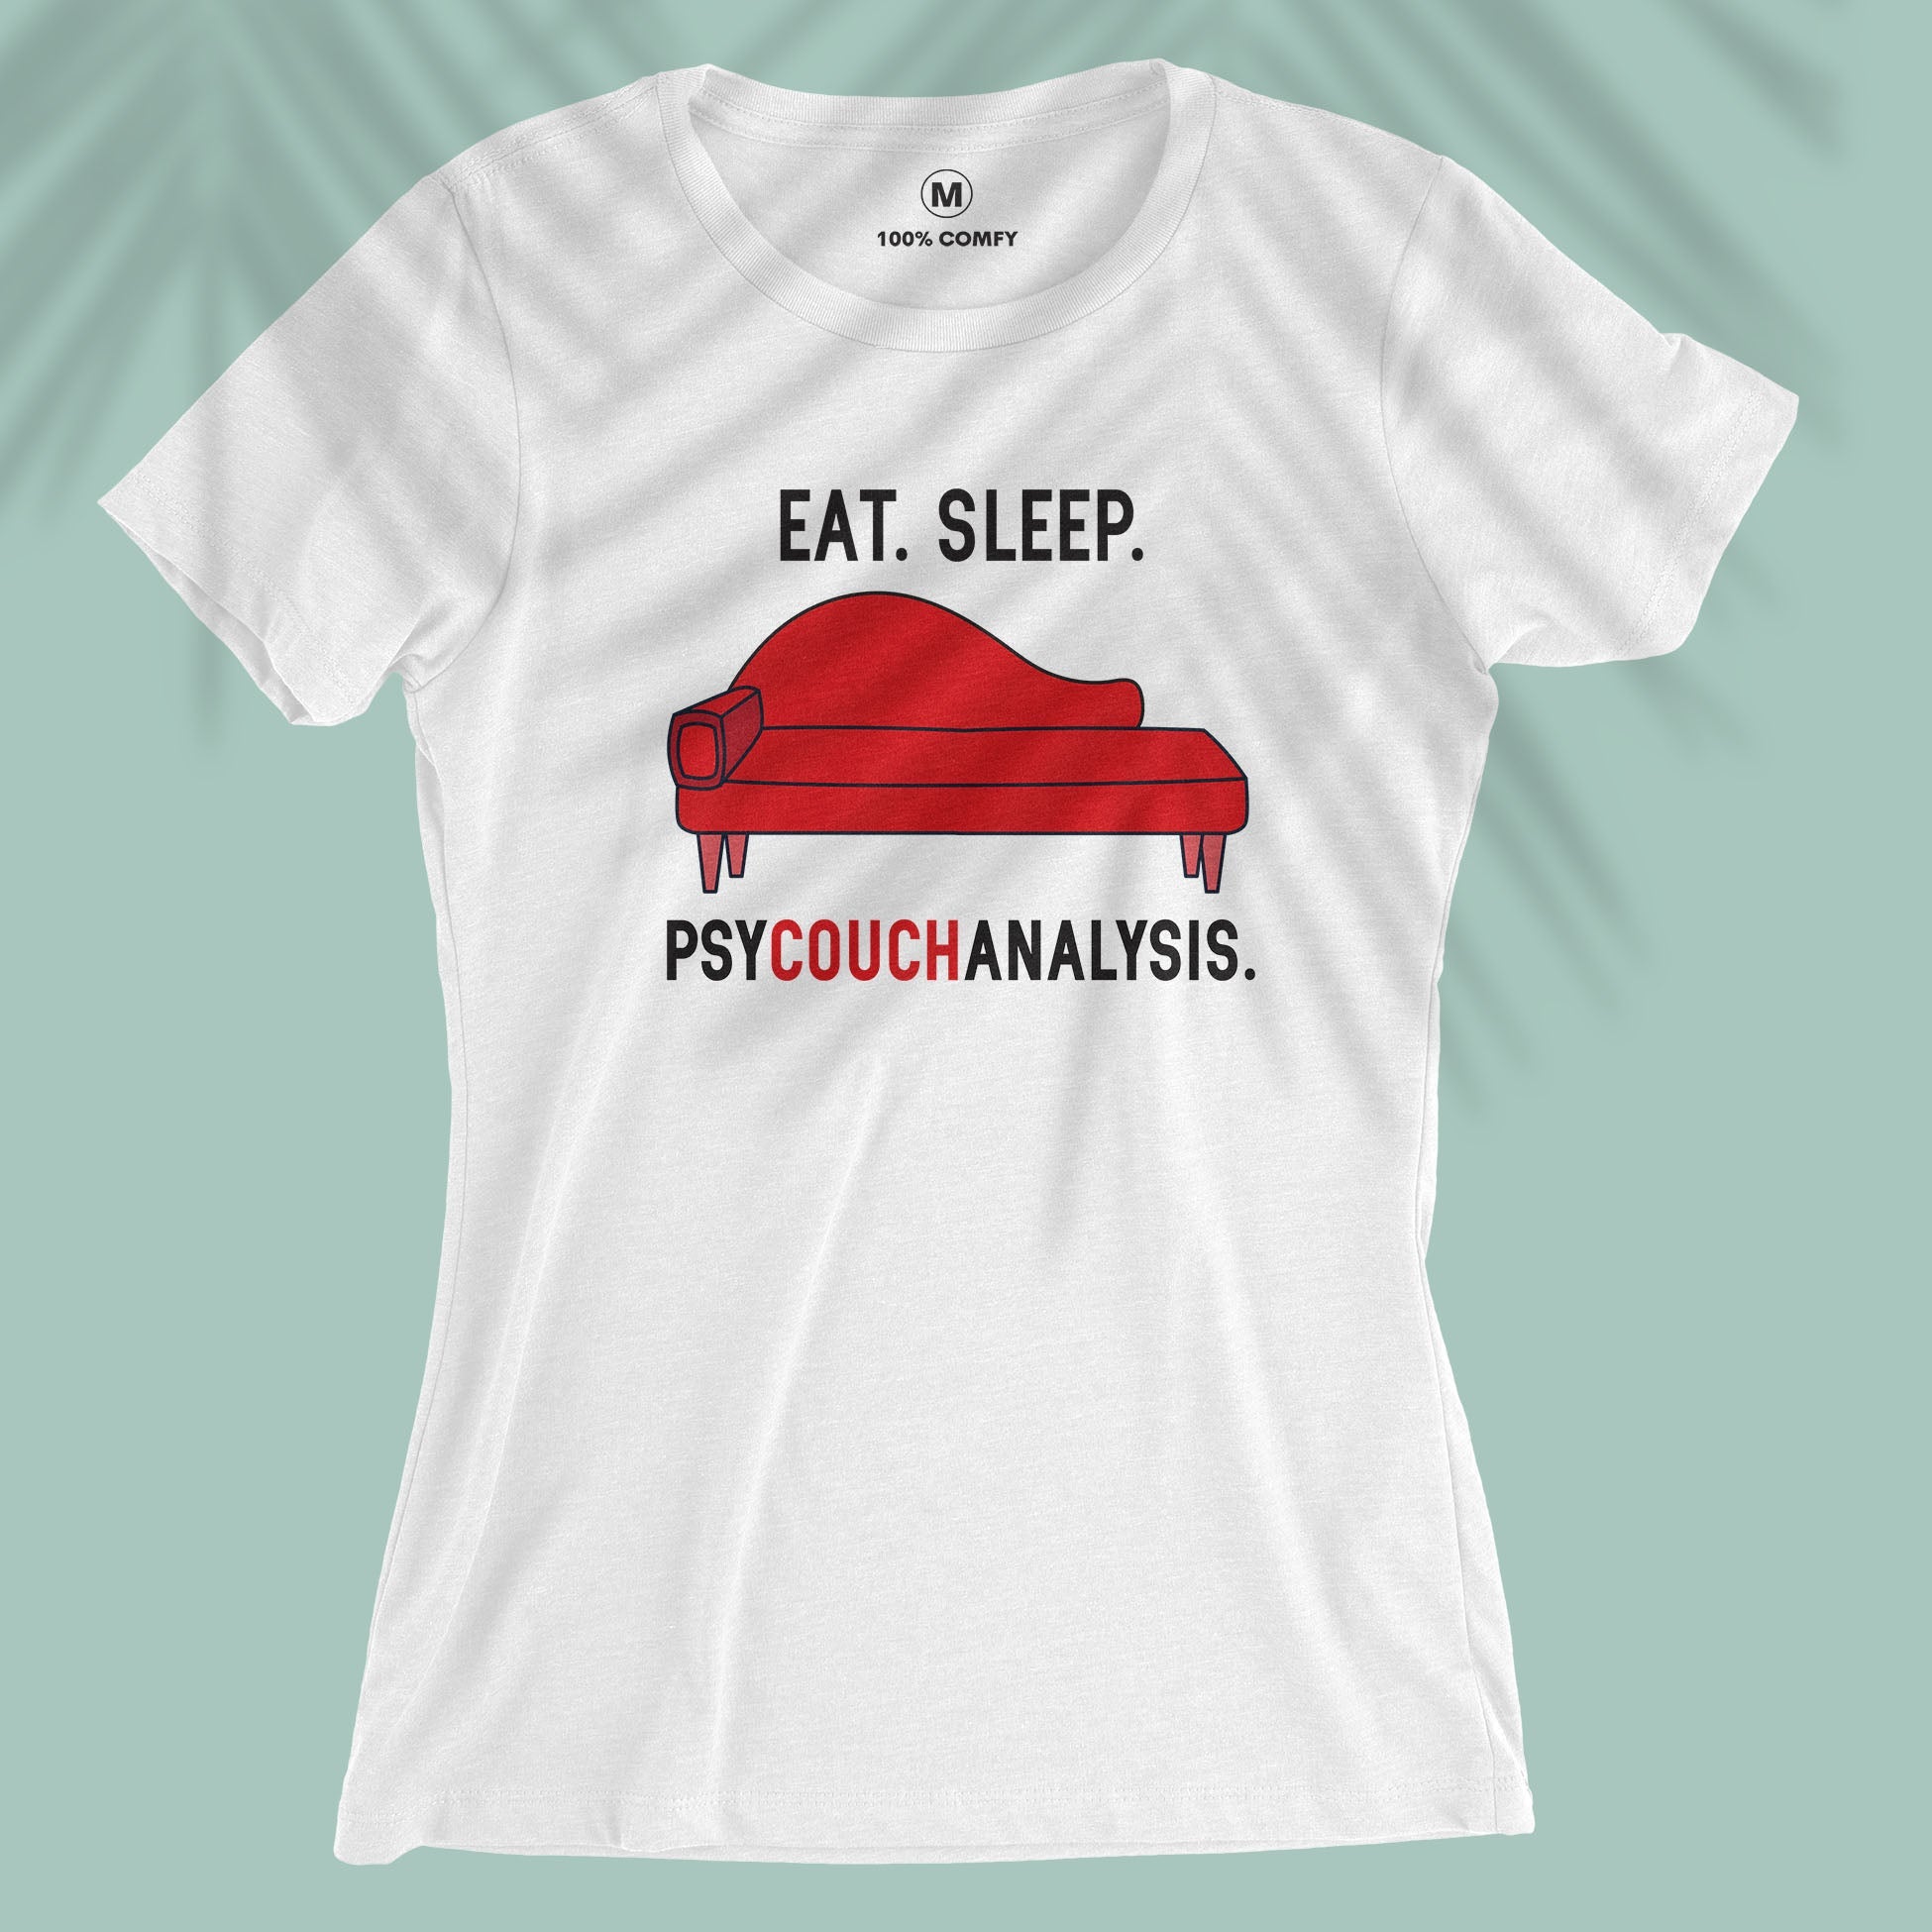 Psycouchanalysis - Women T-shirt